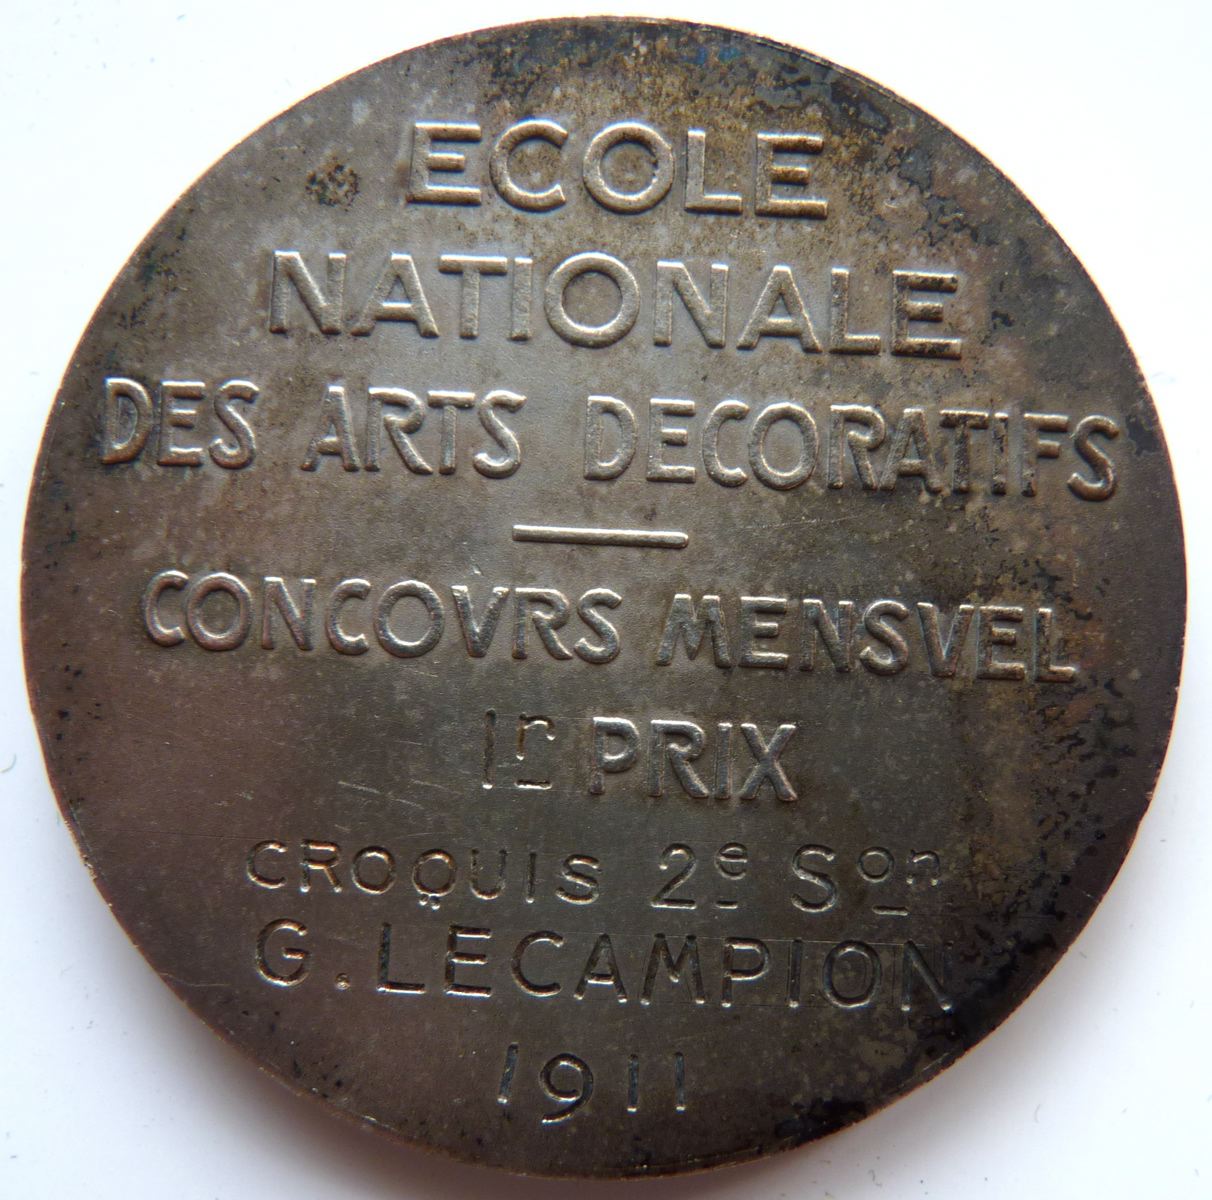 Ecole Nationale des Arts décoratifs - Concours Mensuel 1er prix - Croquis - G. Le campion 1911